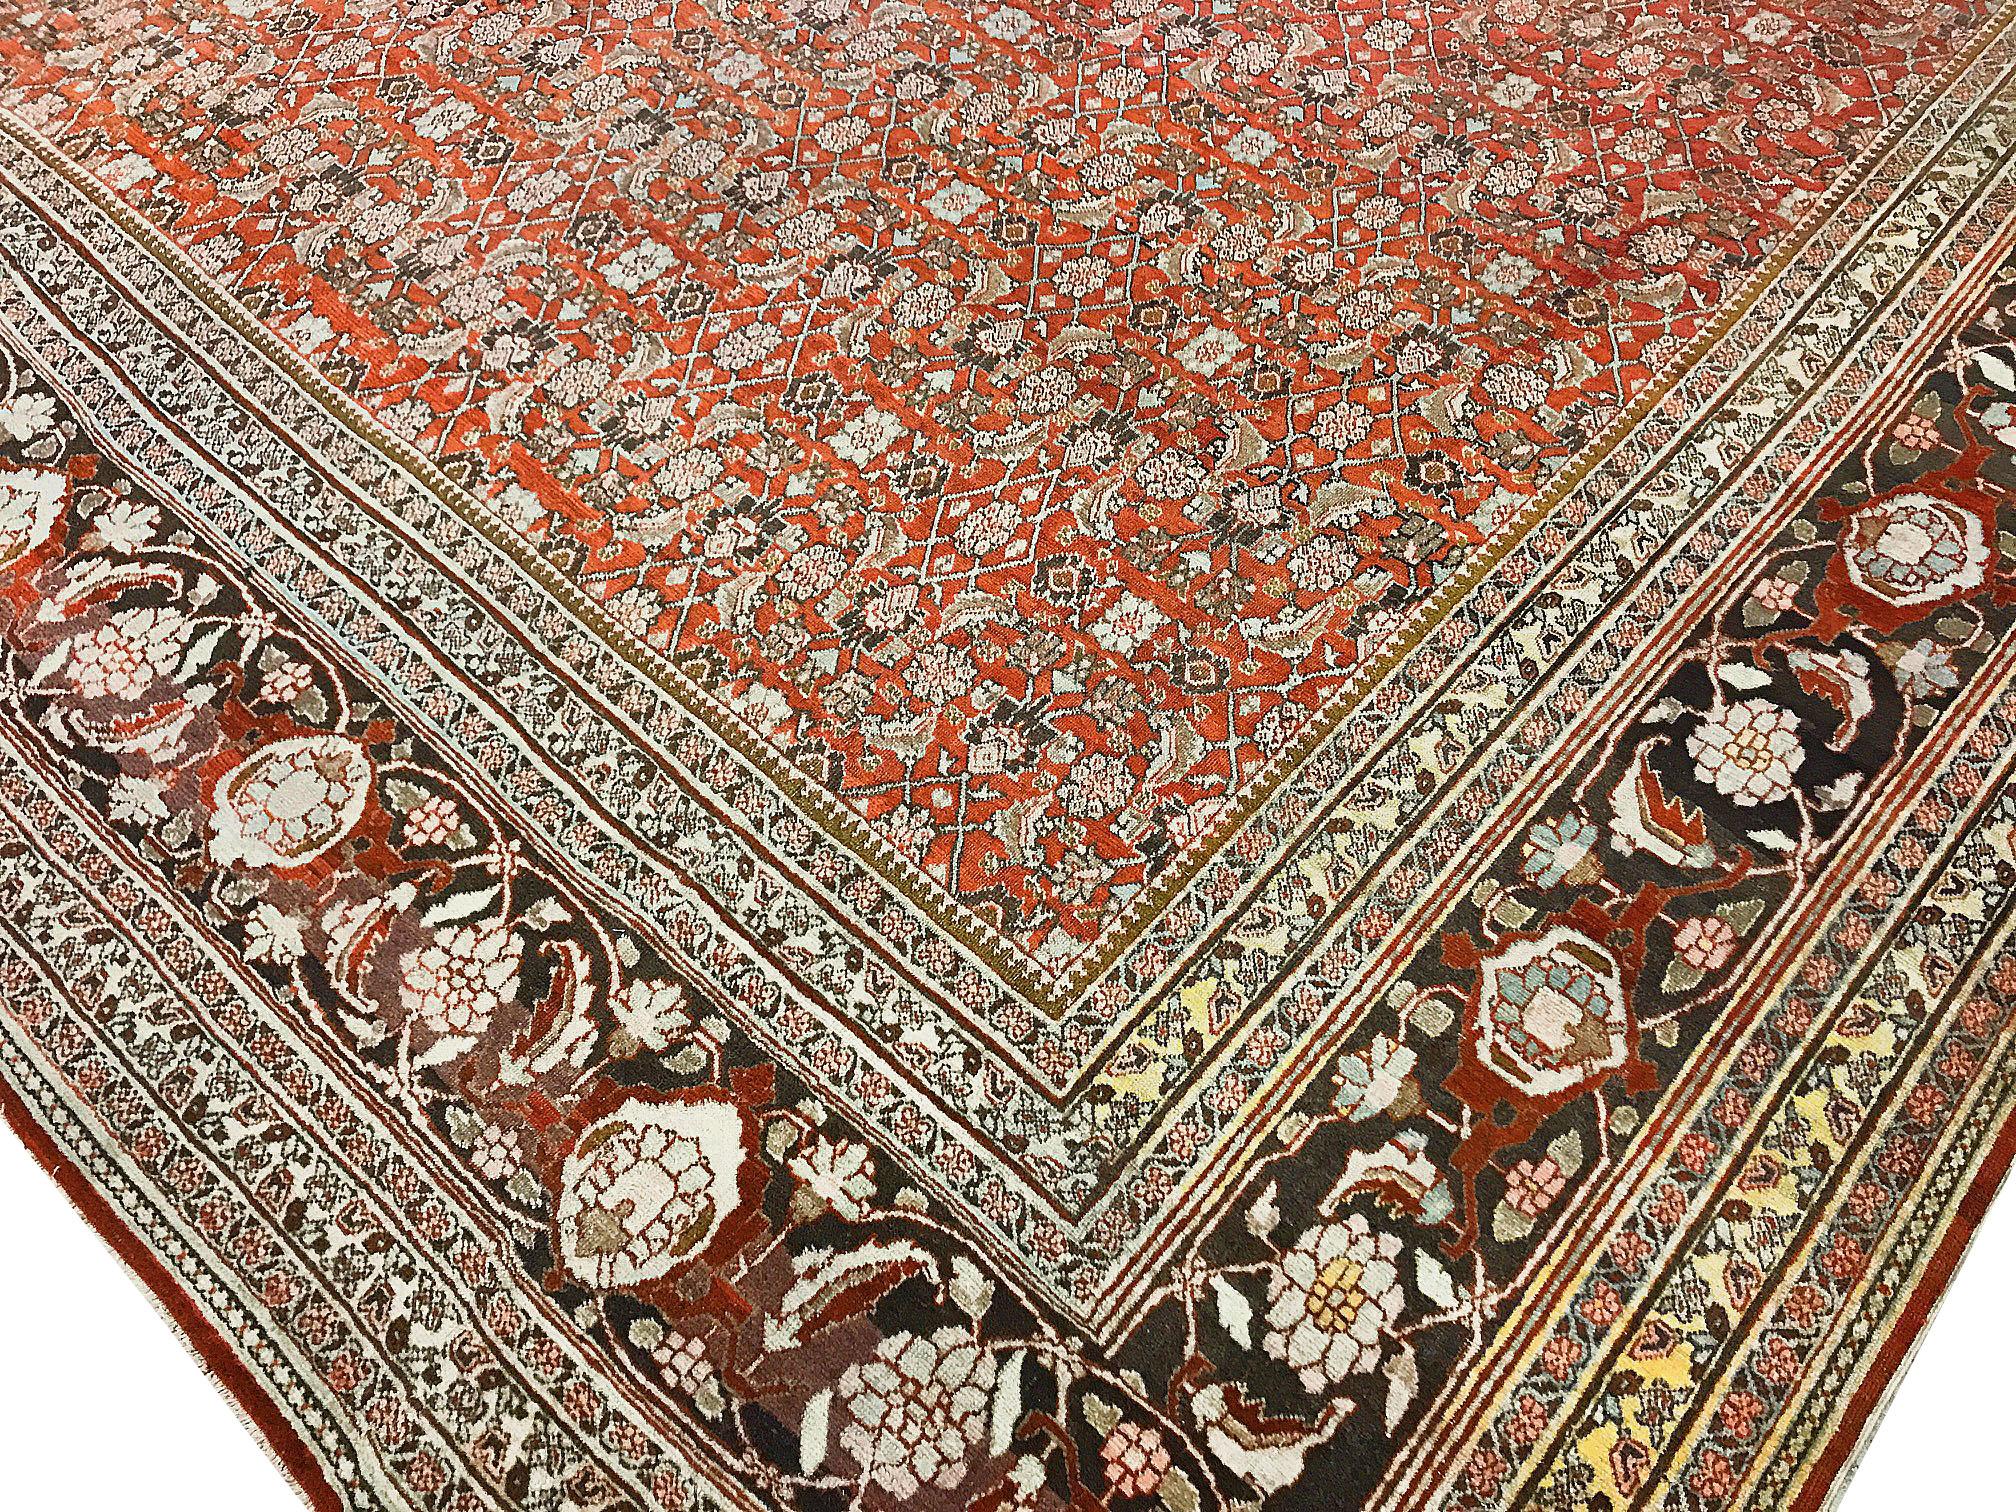 Tapis persan vintage surdimensionné de type Tabriz. Mesures : 11' x 17'5. Un tapis Tabriz tissé à la main datant des années 1940. Le champ central aux motifs floraux est entouré d'une bordure principale imposante qui donne au tapis un aspect à la